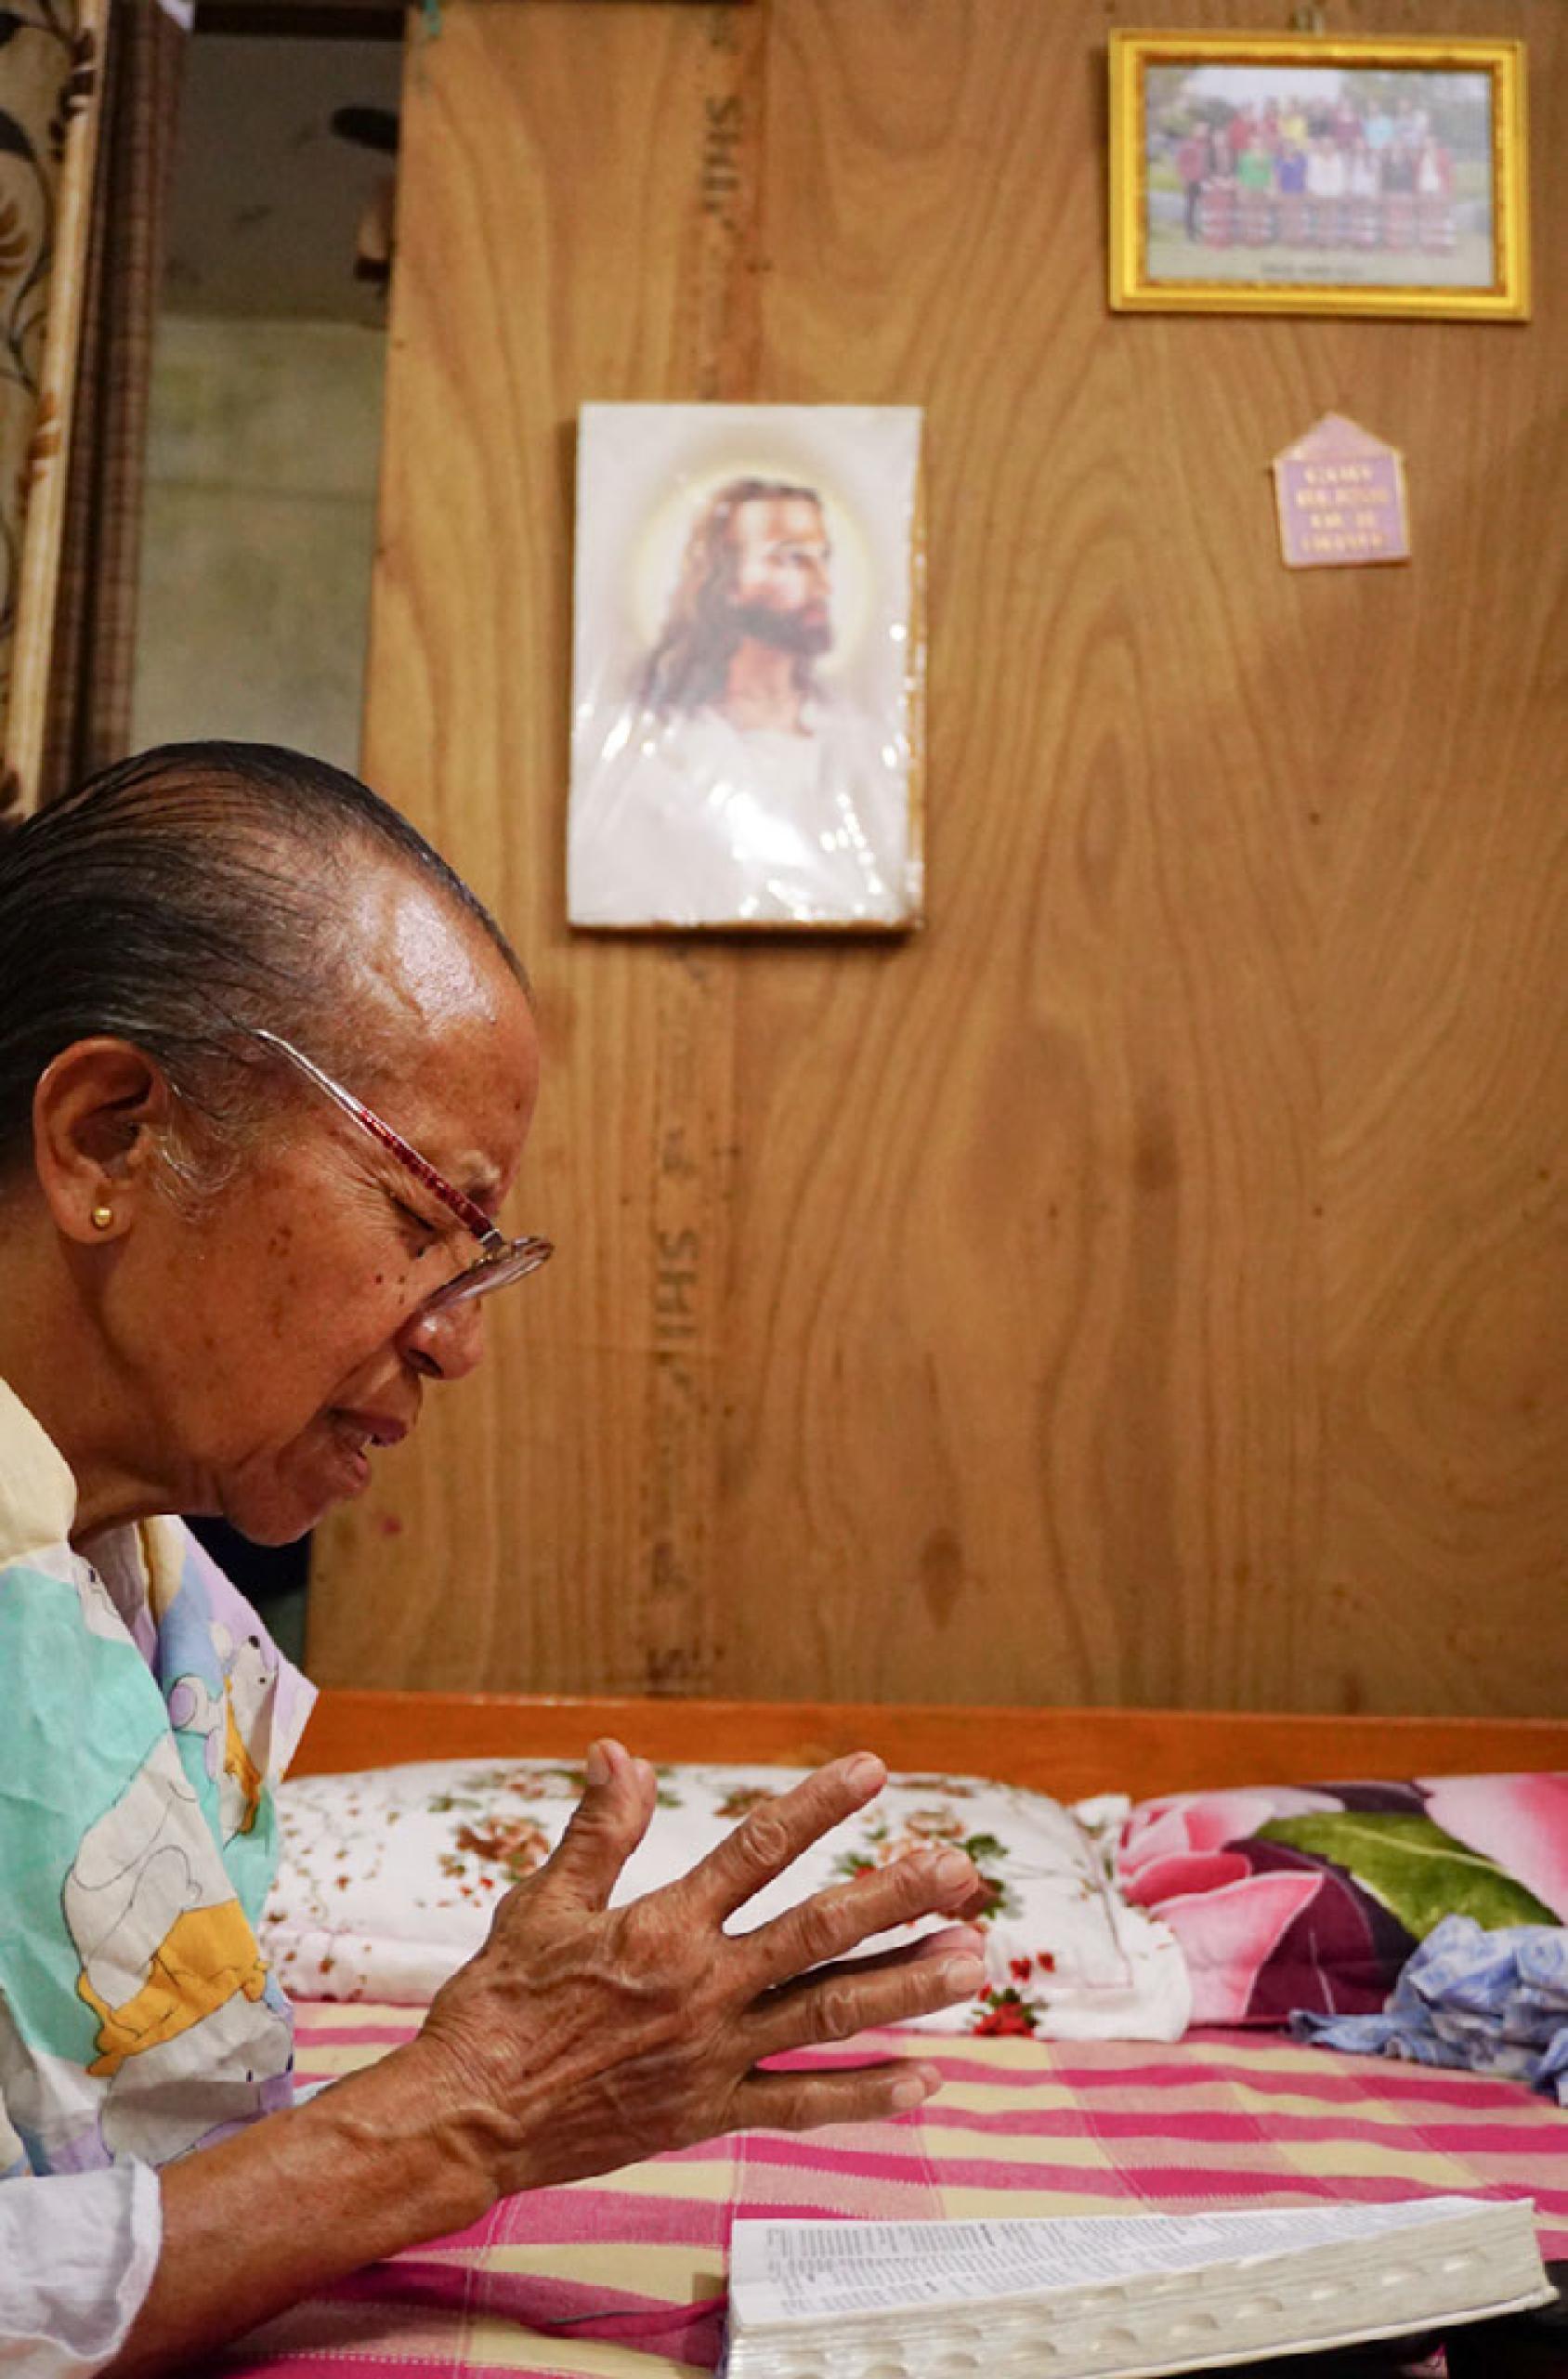 Пожилая женщина молится с открытой Библией на столе.